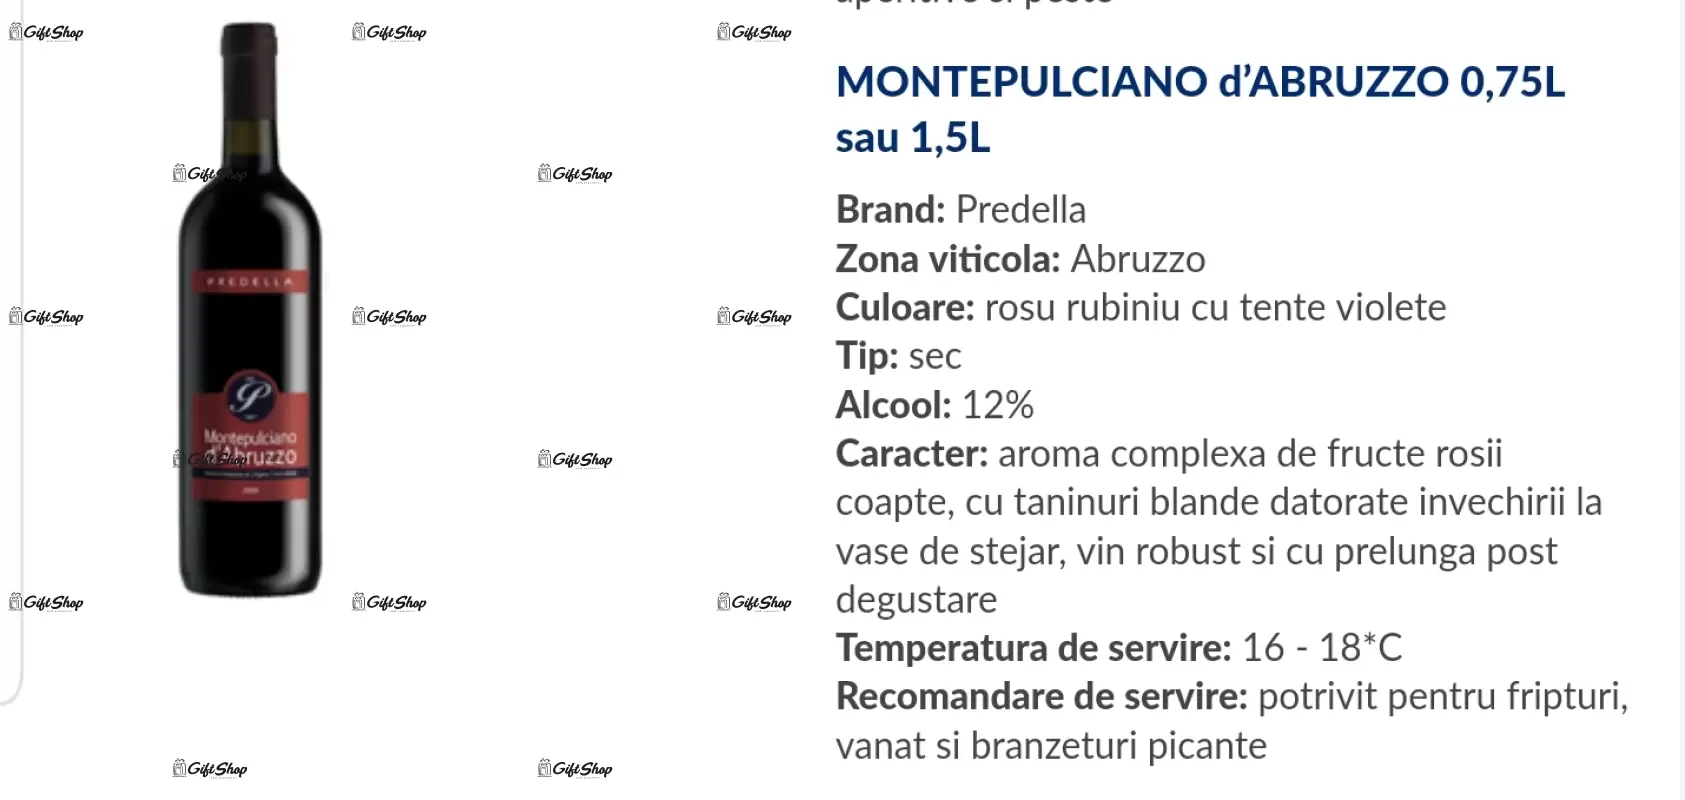 August este luna in care s-a nascut perfectiunea, editie limitata, rosu predellea abruzzo, sec, 12.5% alc.